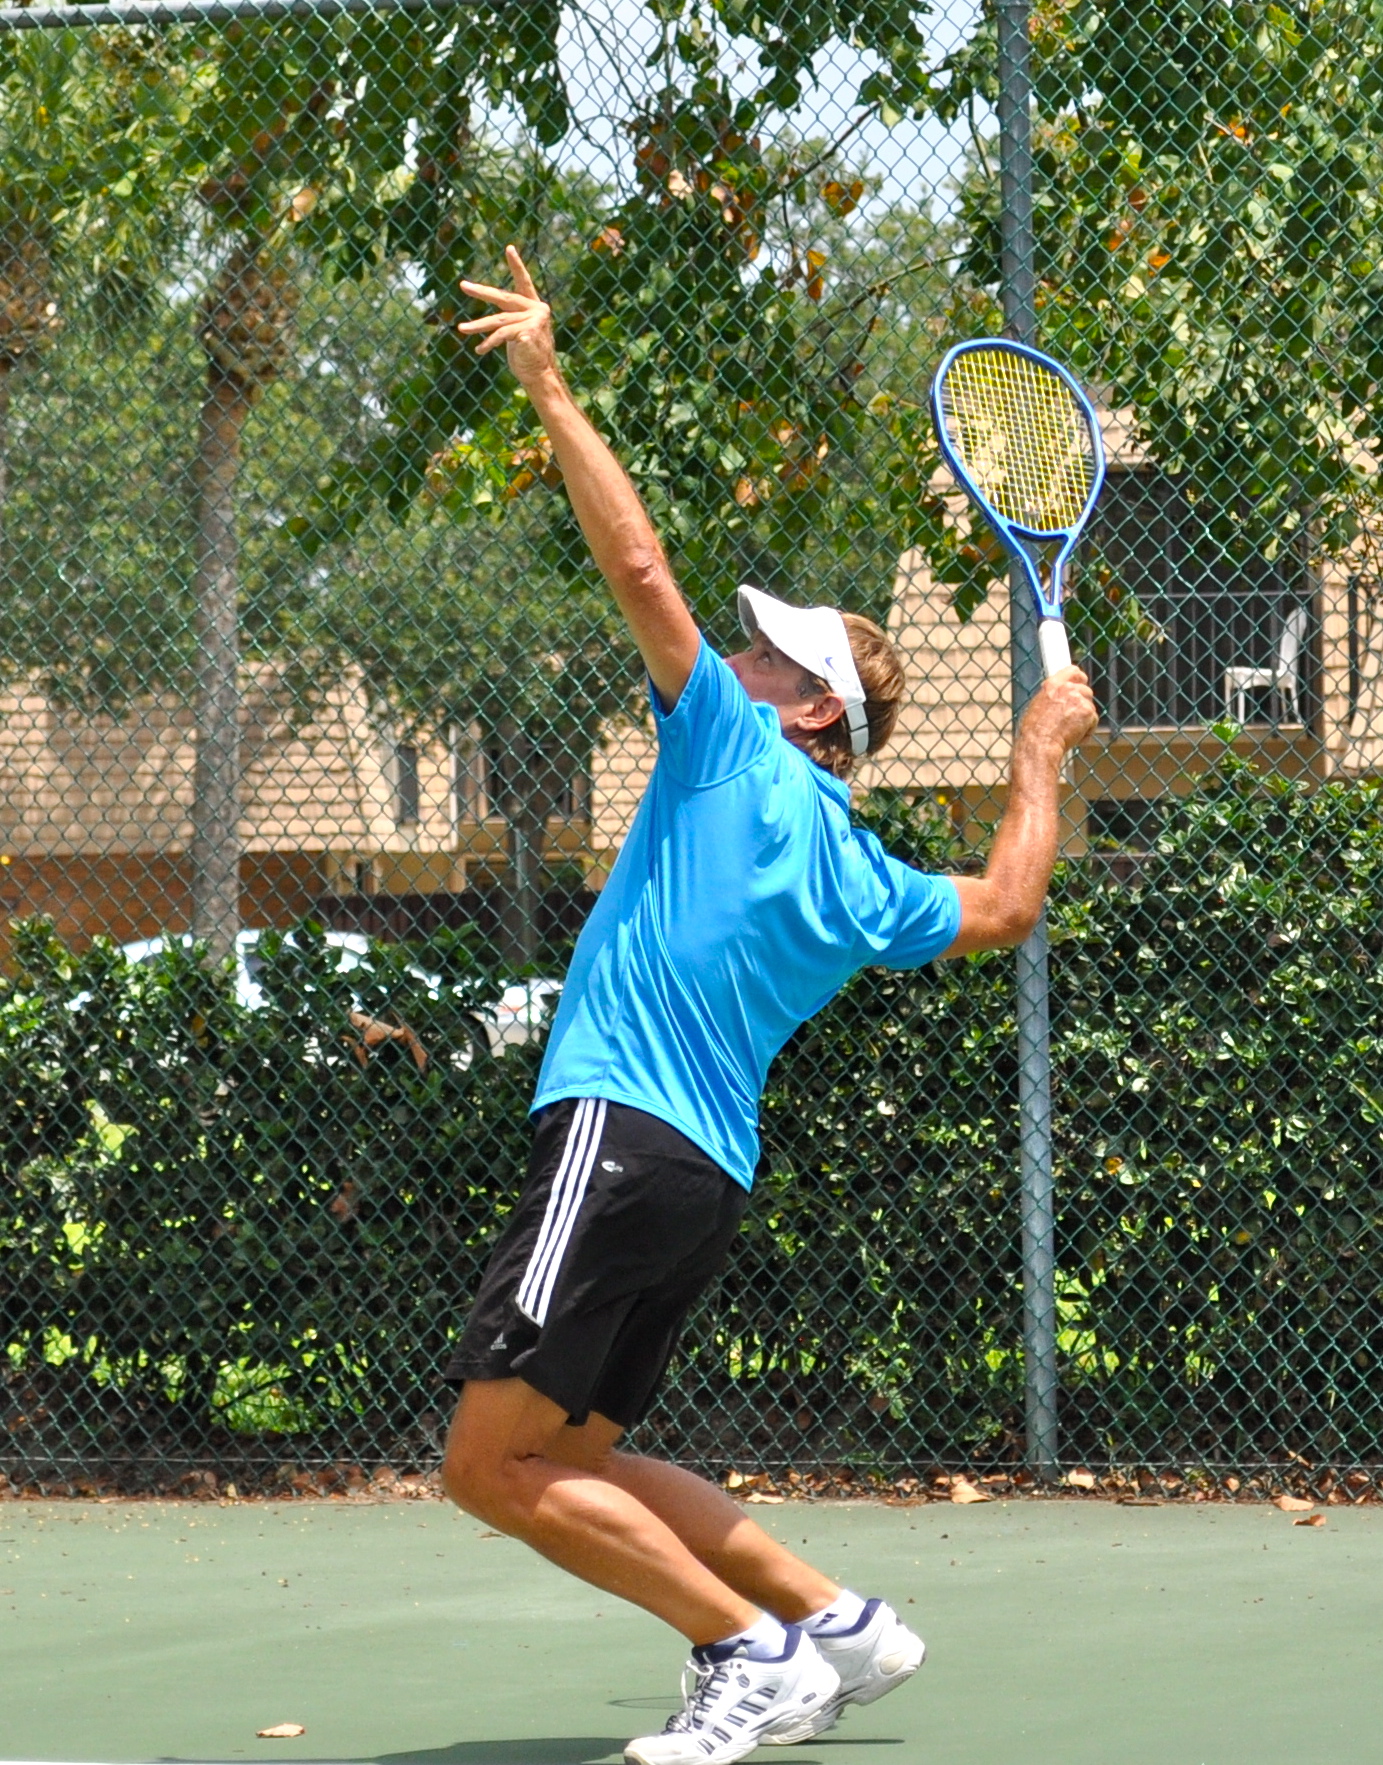 Dennis G. teaches tennis lessons in Palm Beach Gardens, FL